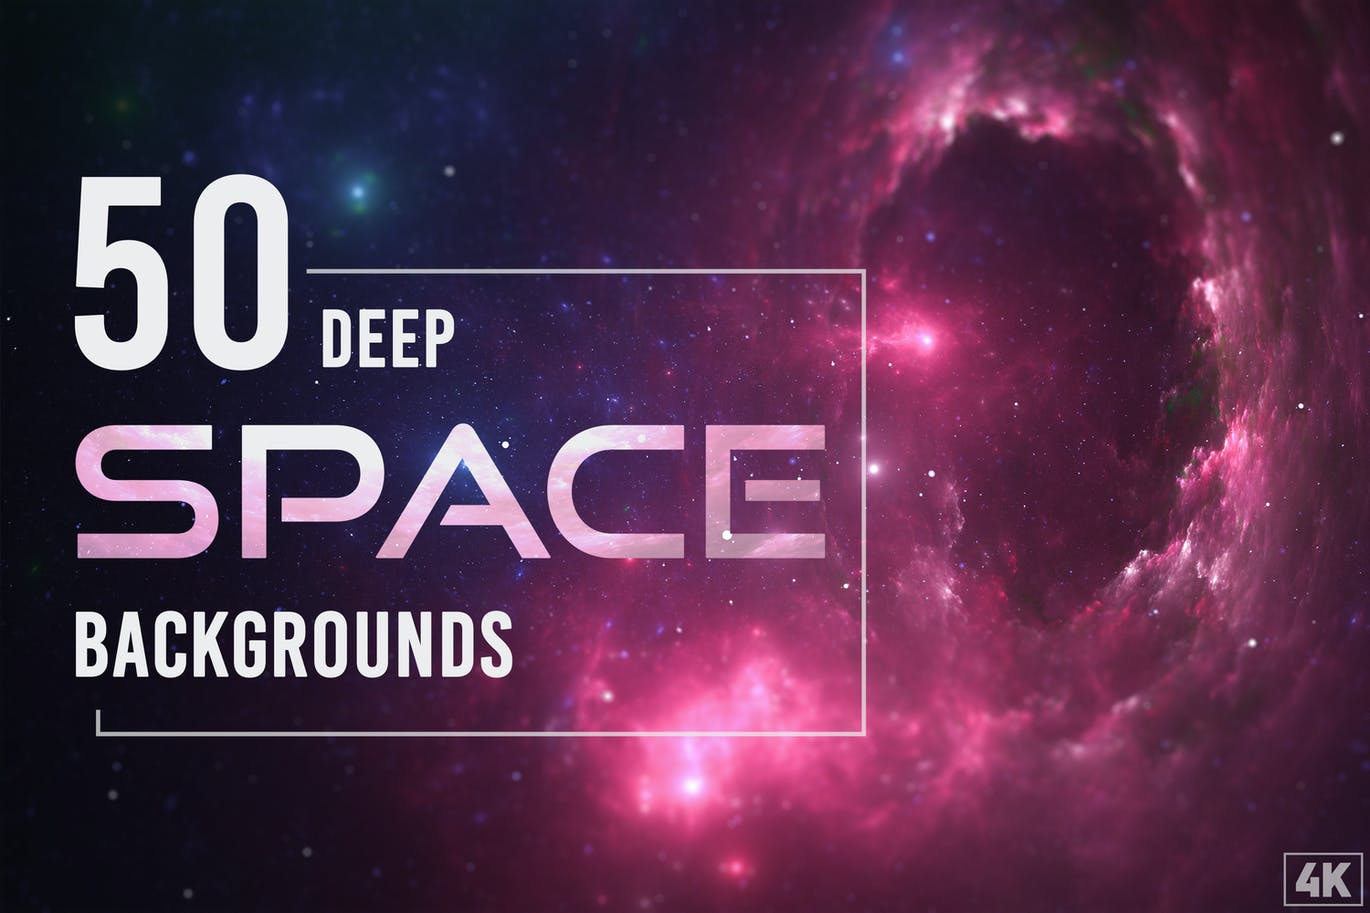 50个深空太空背景素材v1 50 Deep Space Backgrounds – Vol. 1 图片素材 第1张